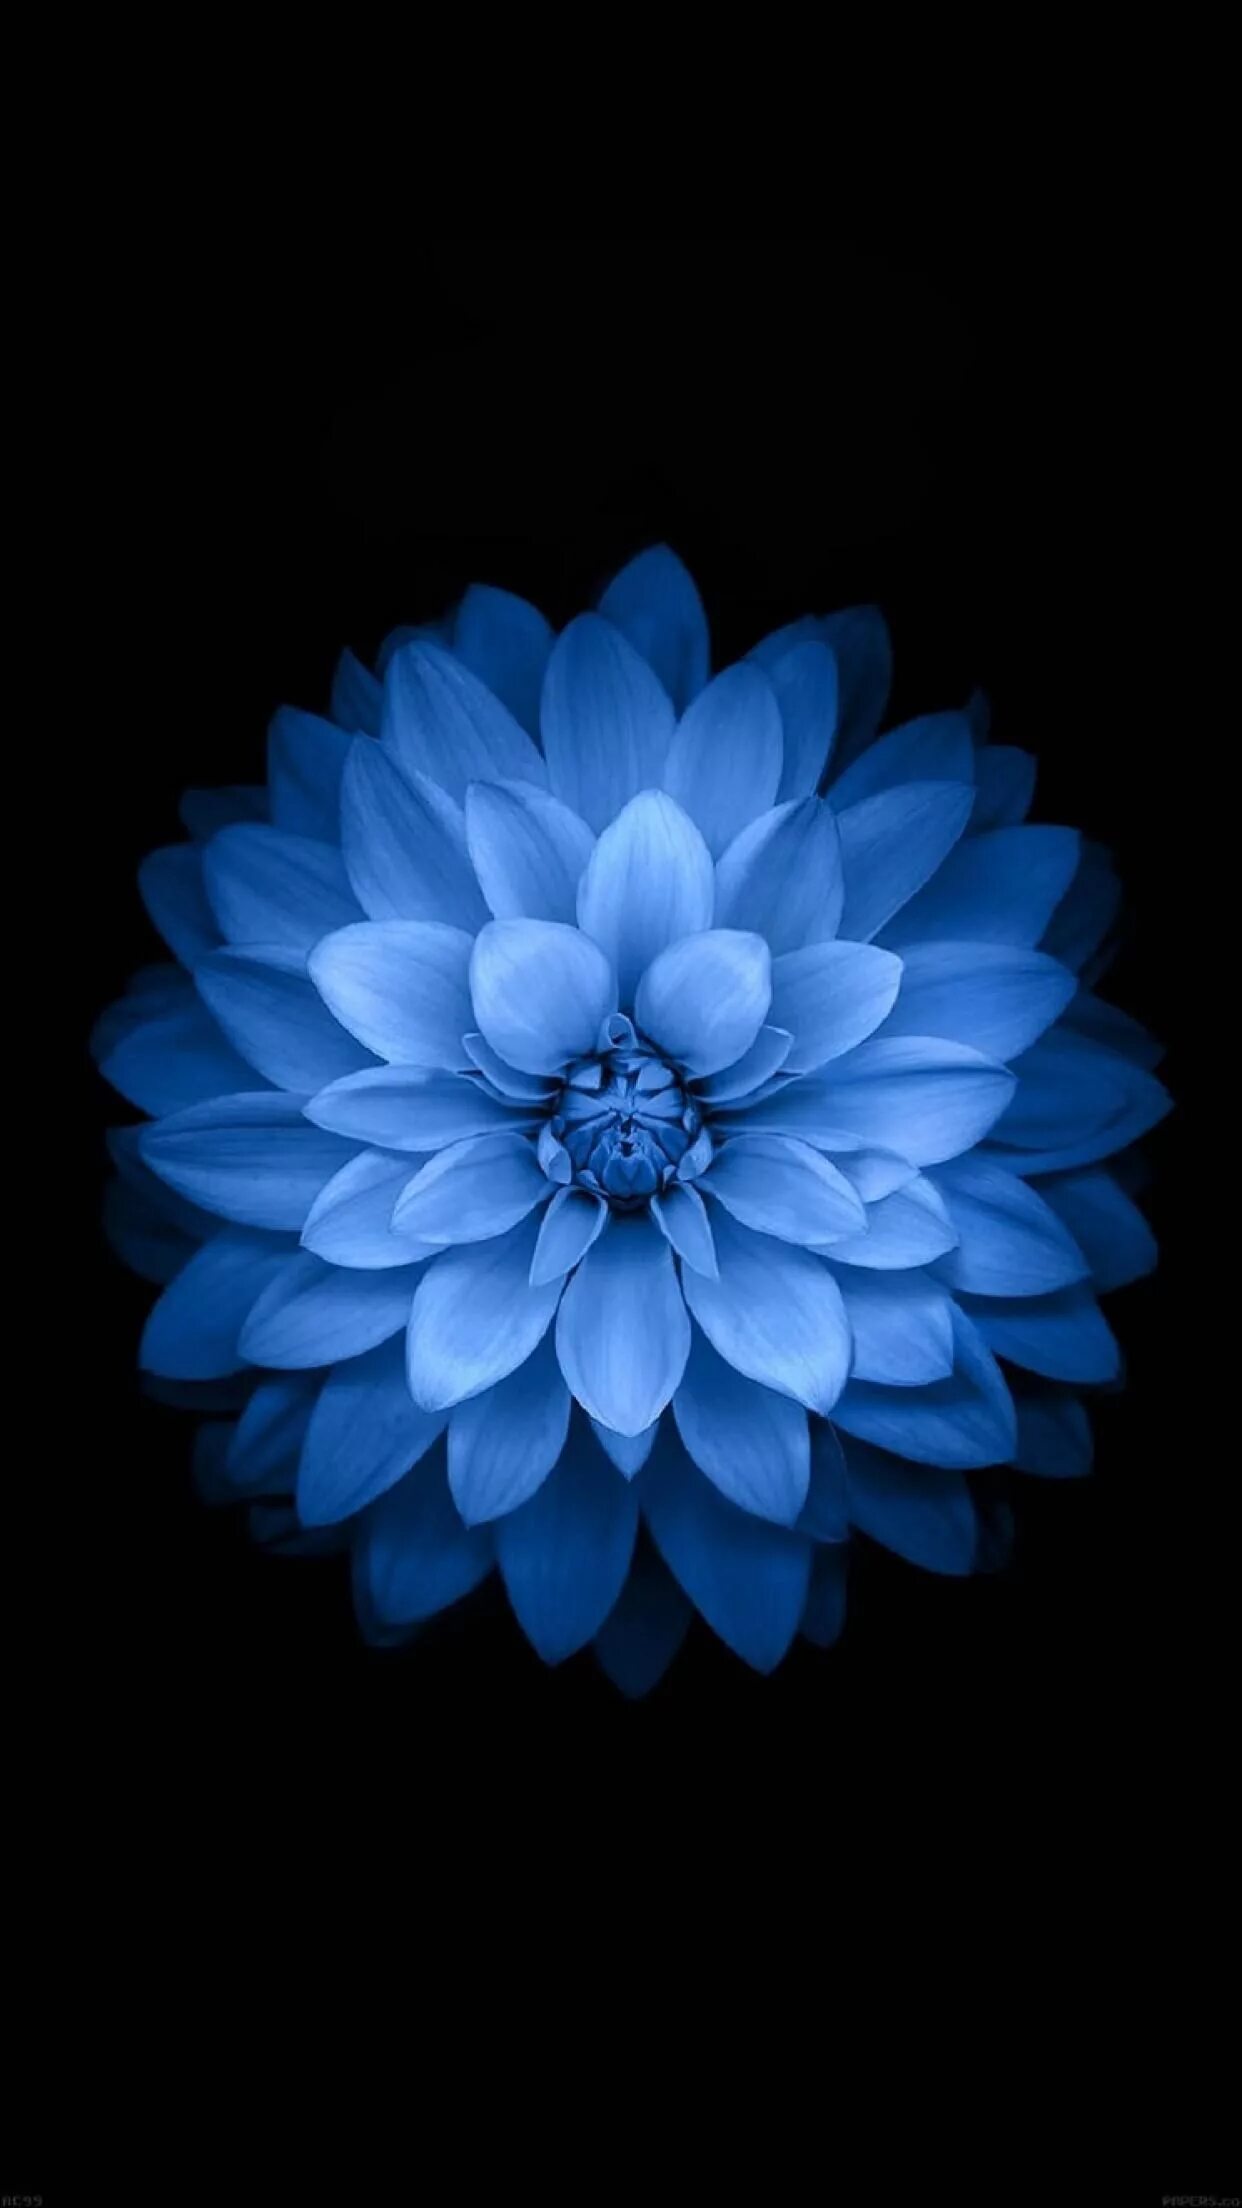 Цветы на телефон айфон. Цветы на черном фоне. Цветы на айфон. Синий цветок айфон. Цветок iphone.